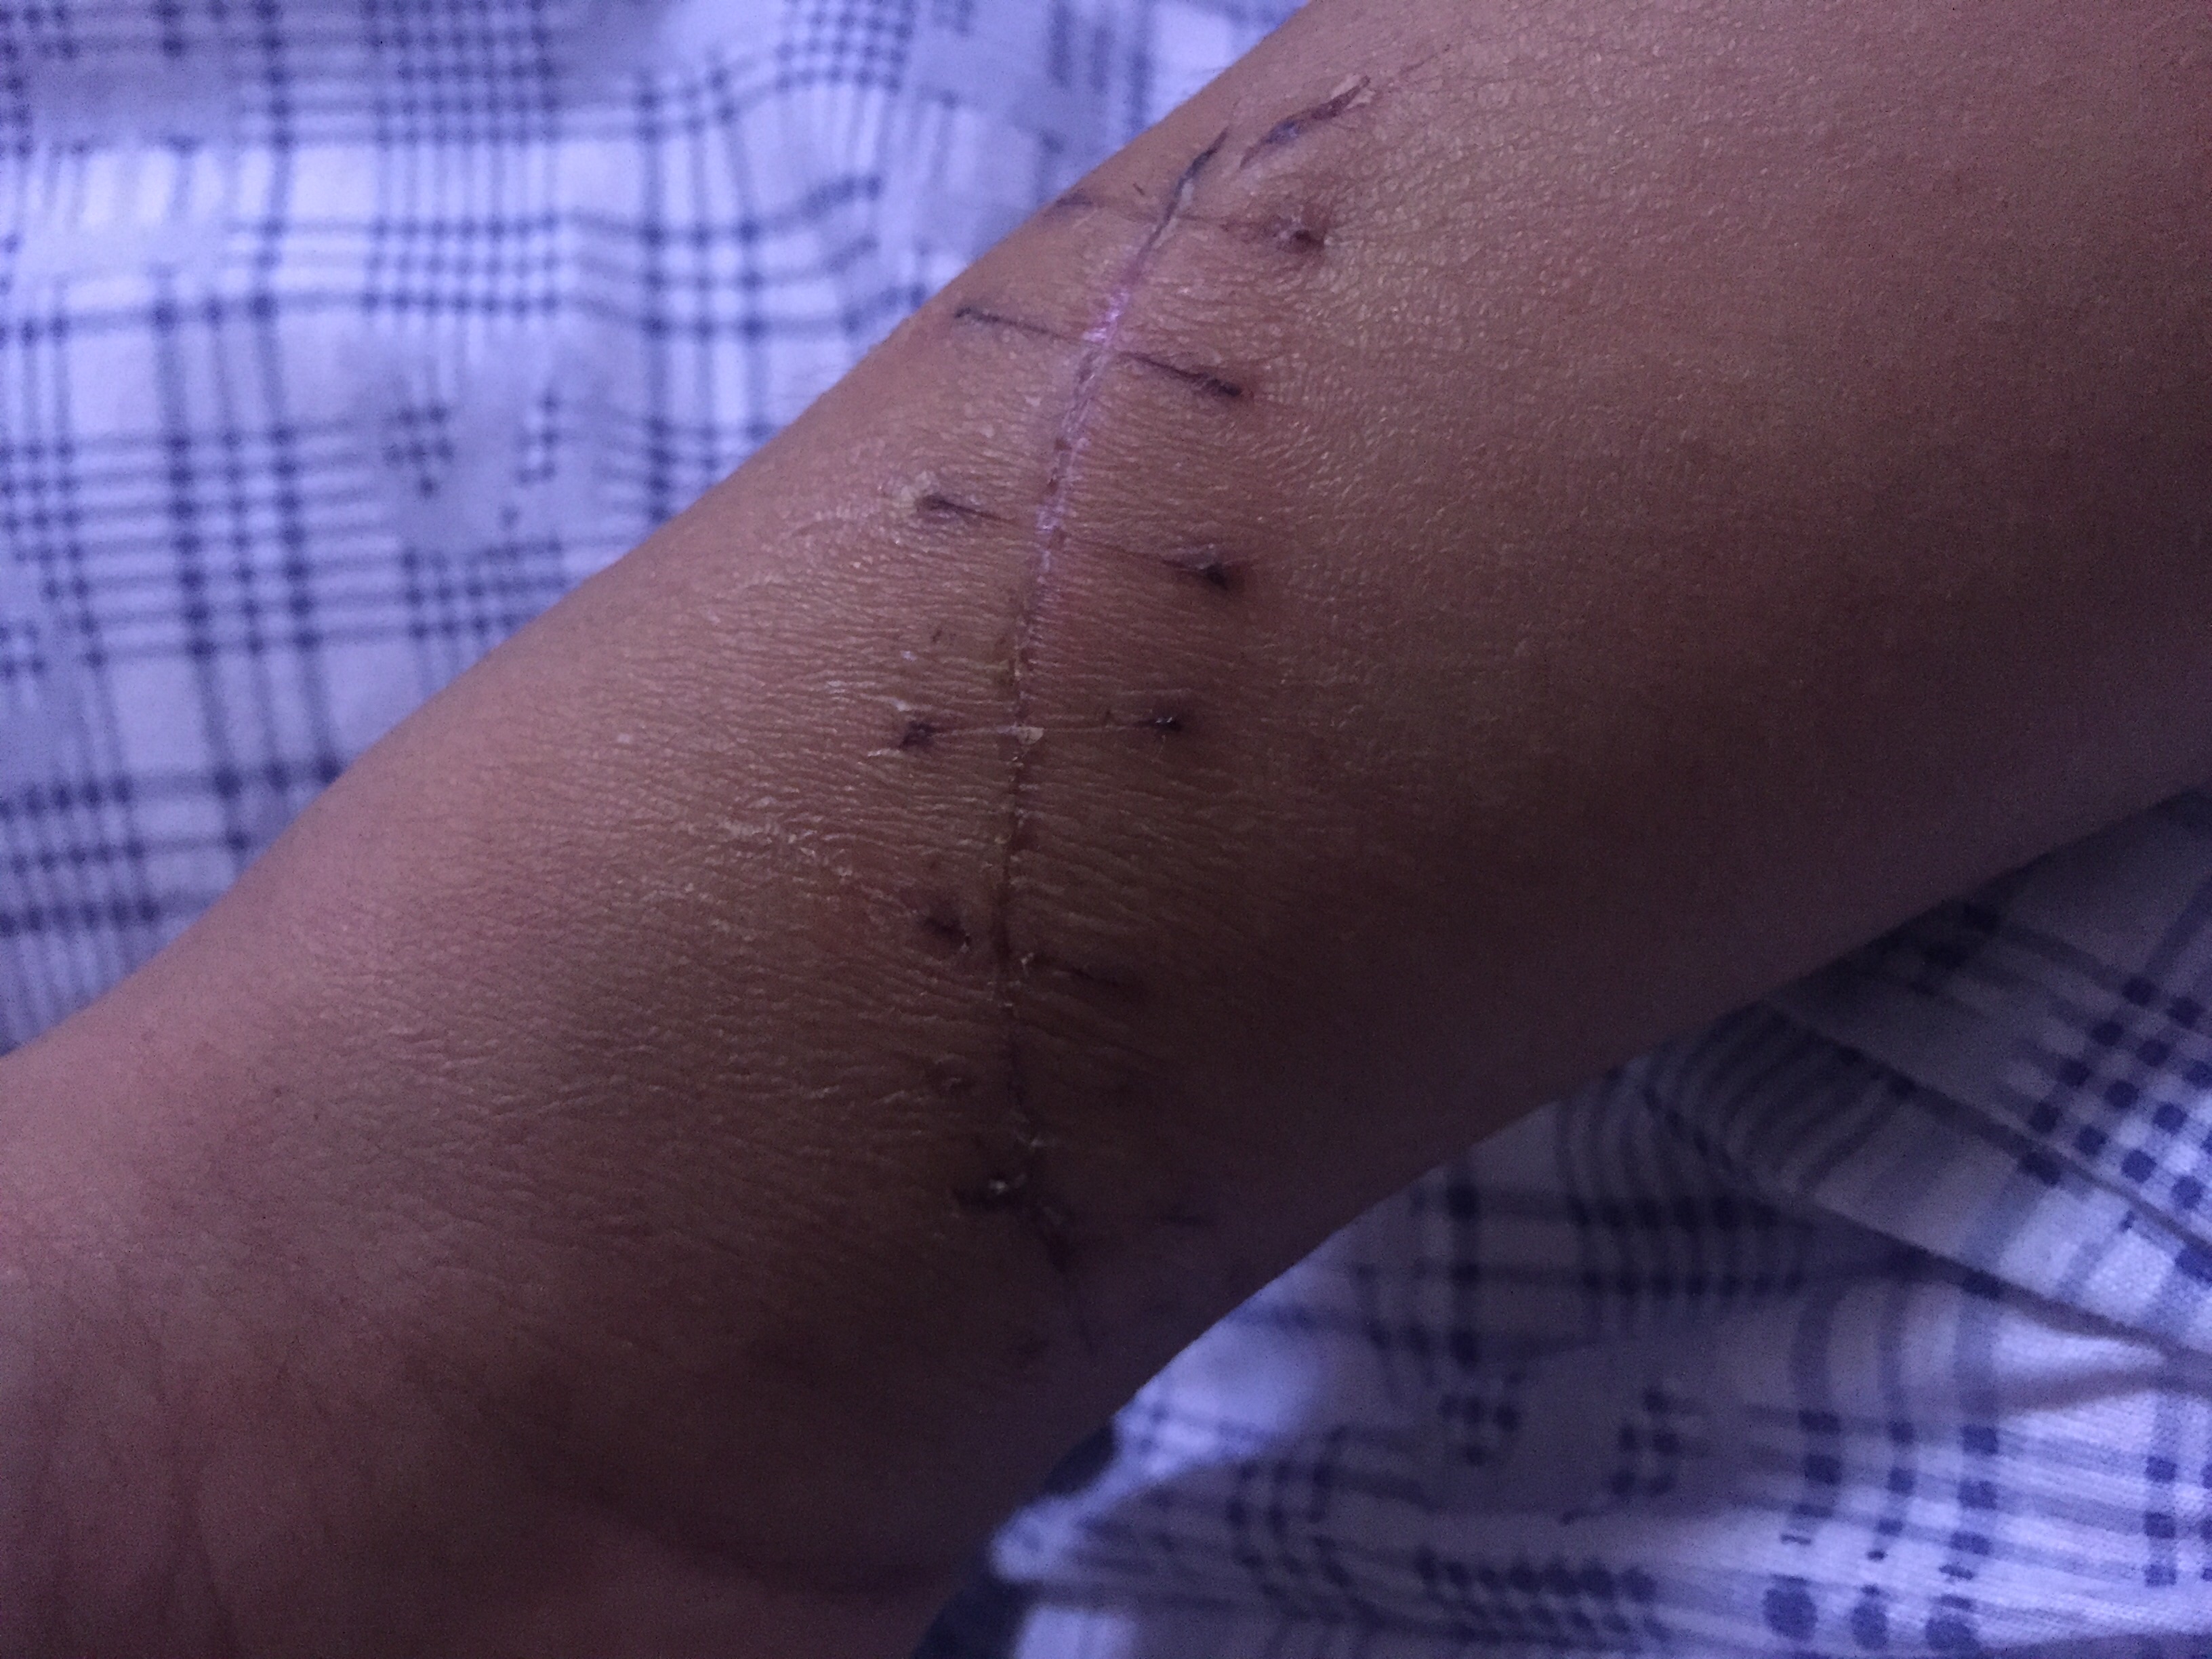 你好医生,15天前,我的手腕内侧被人砍了一刀,伤口9厘米,断